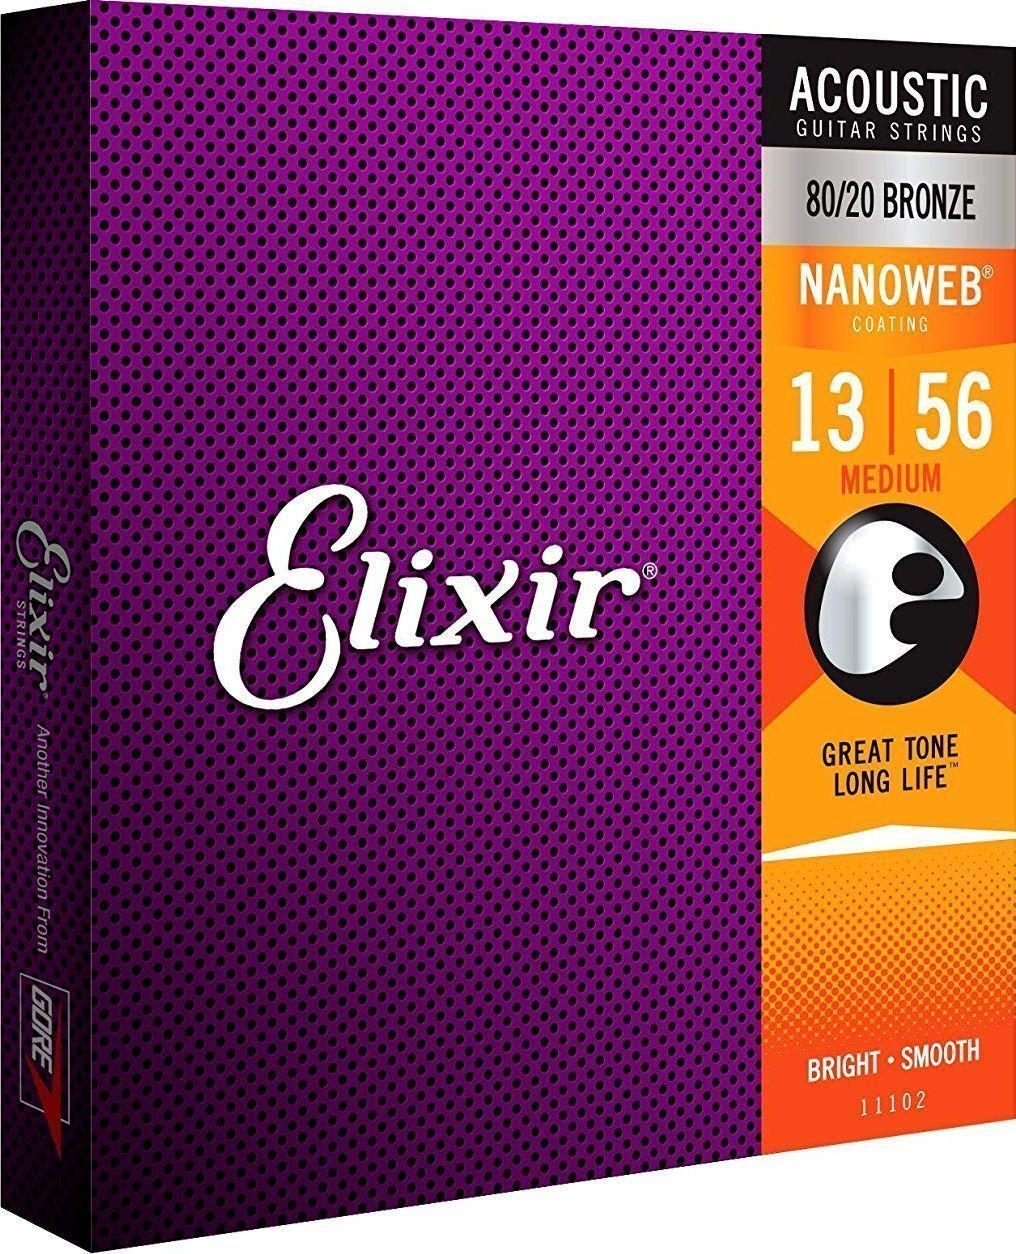 Cordas de guitarra Elixir 11102 Nanoweb 13-56